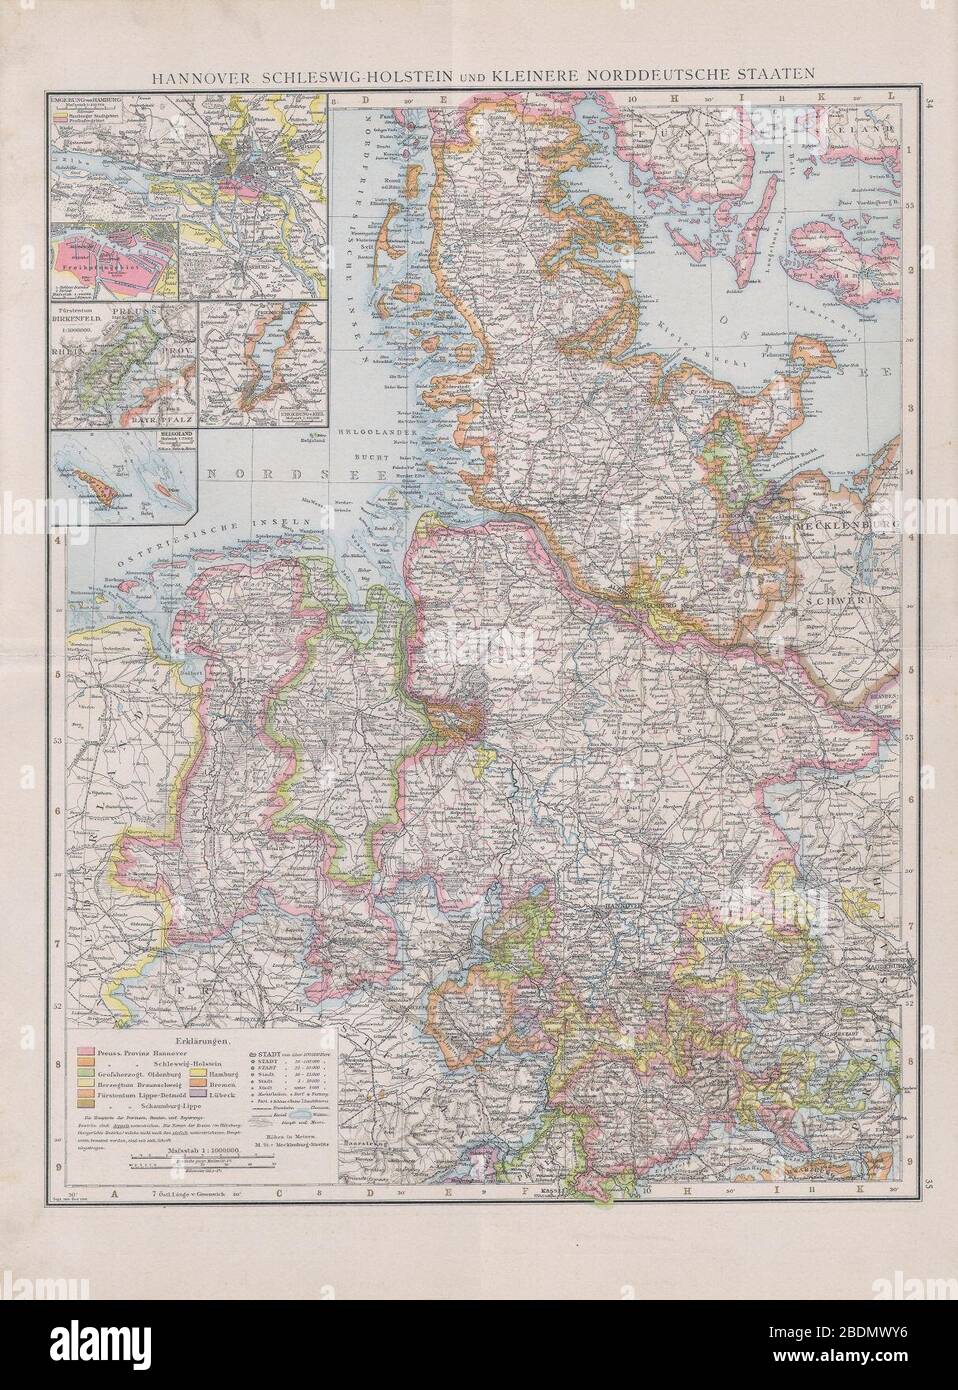 Hannover,Schleswig-Holstein und kleinere norddeutsche staaten. Stock Photo